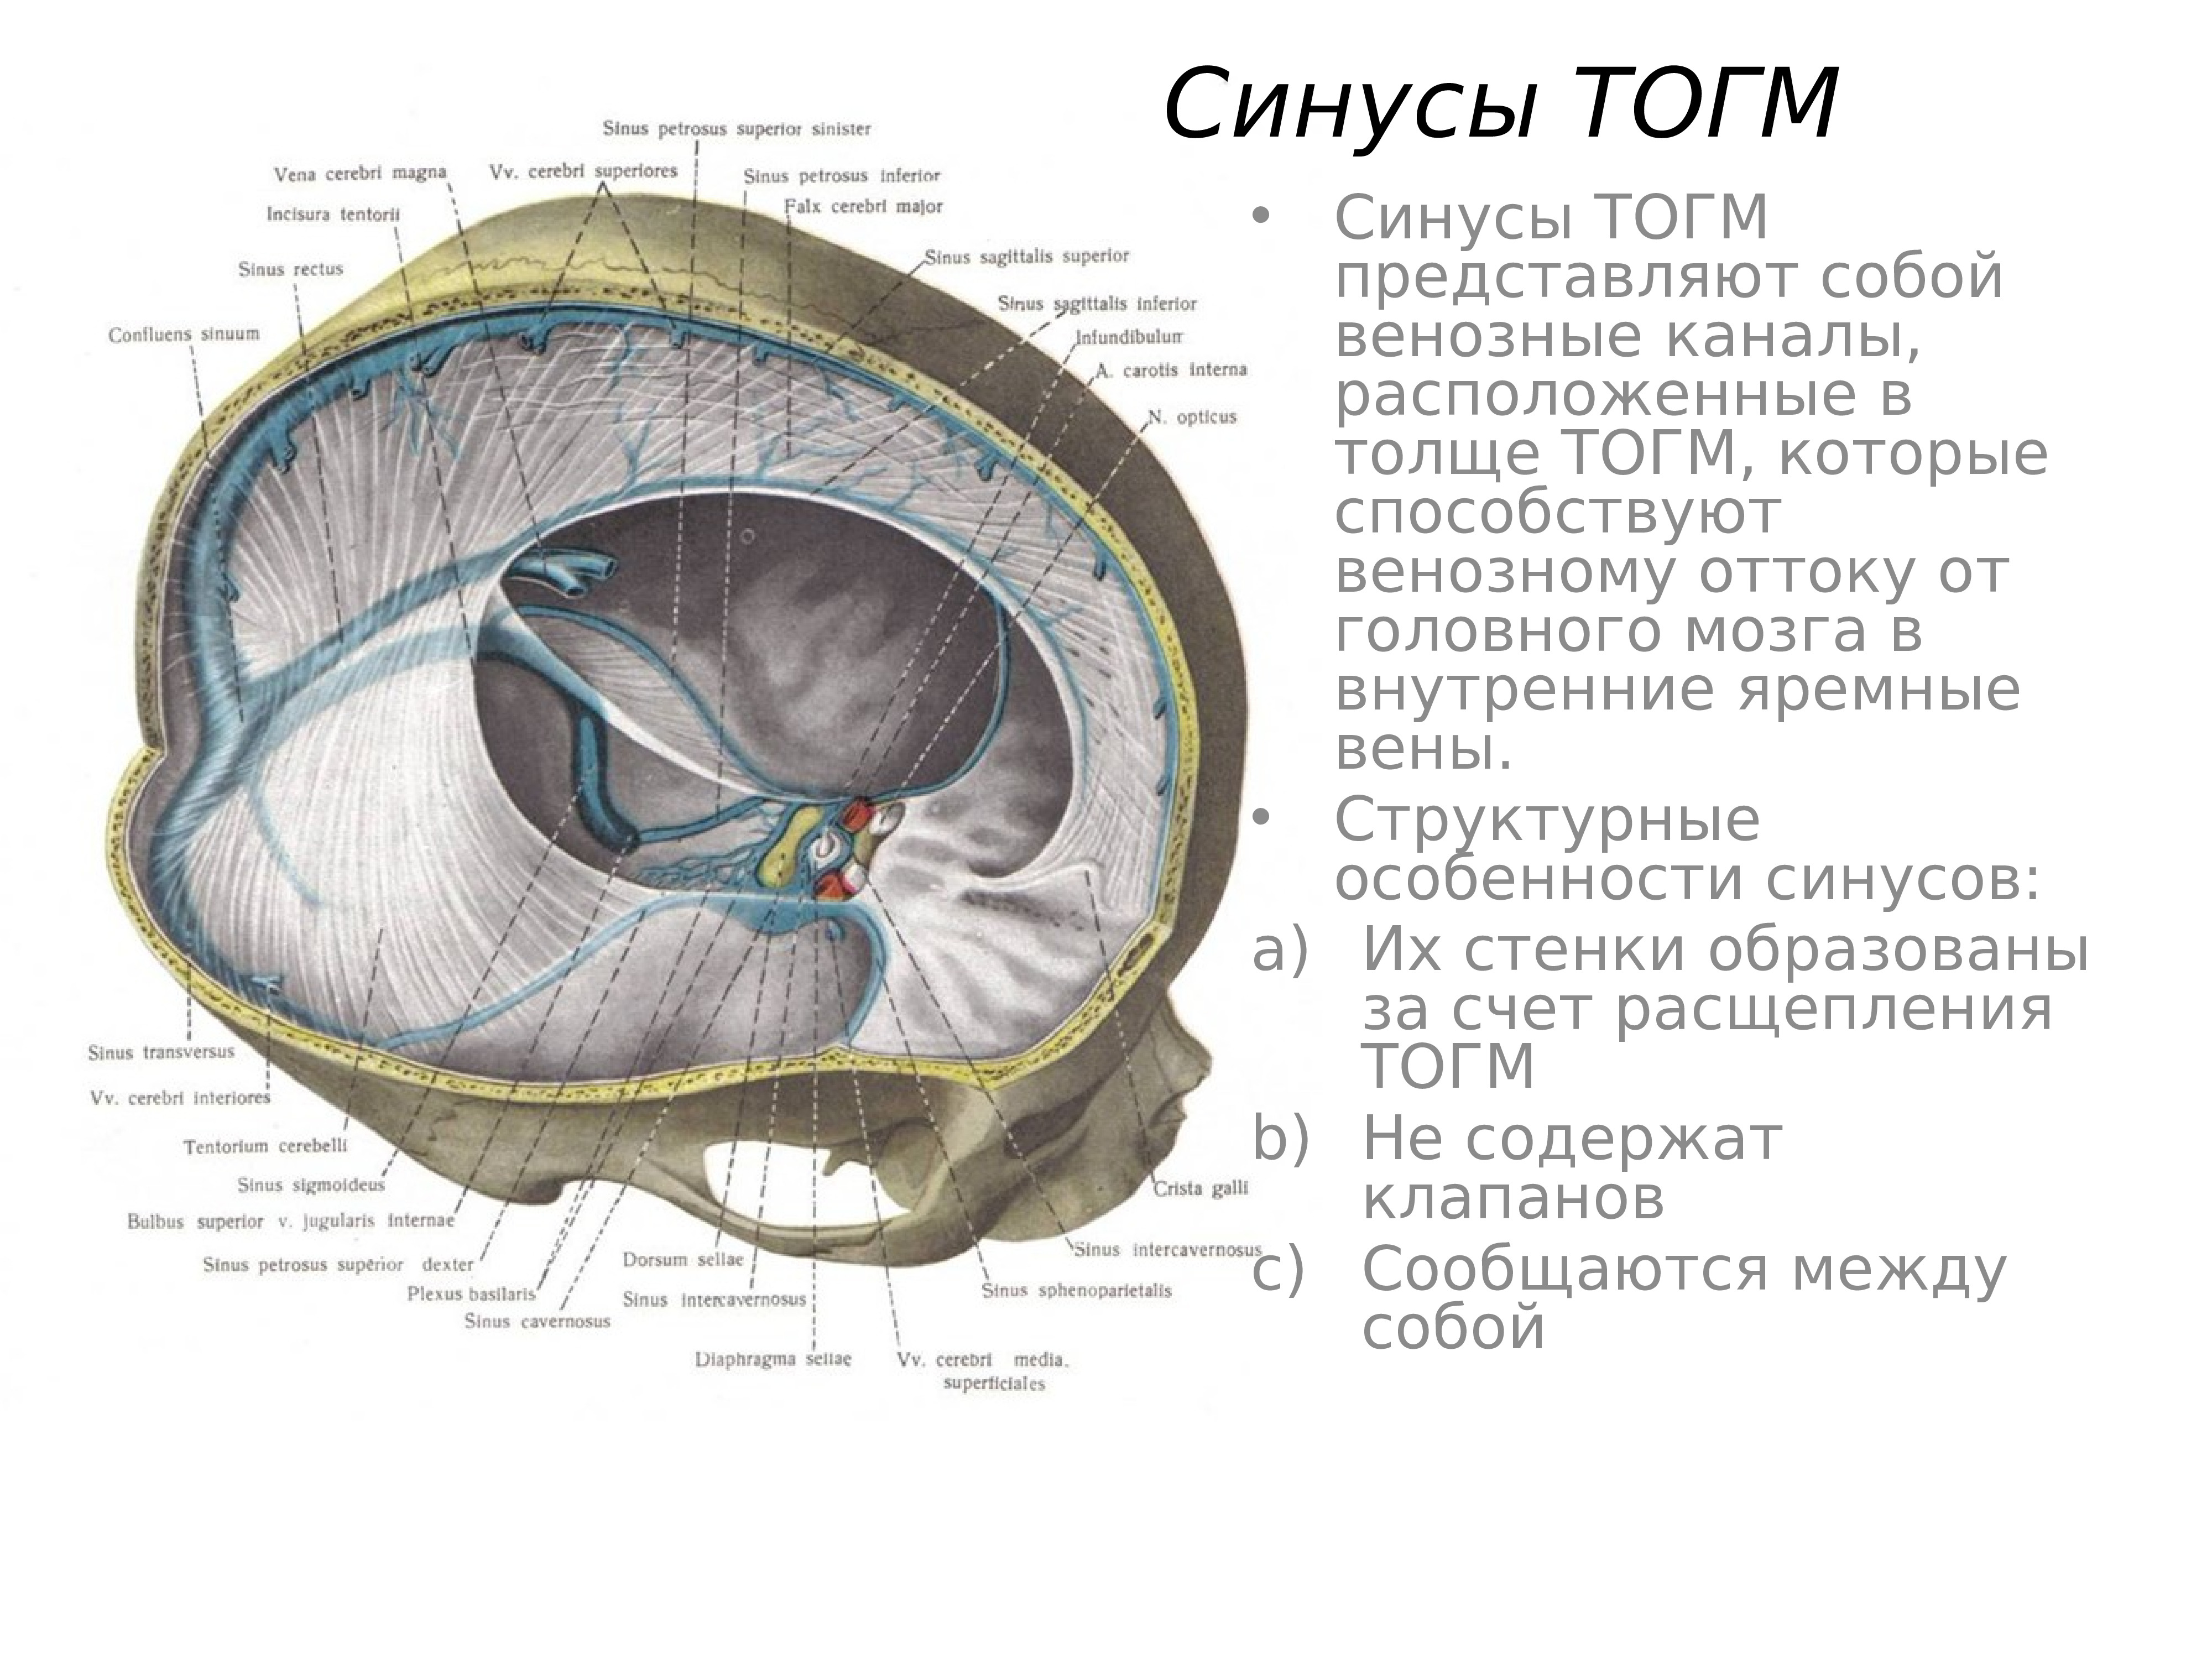 Синусы оболочки головного мозга. Оболочки мозга. Синусы твердой мозговой оболочки. Вены головного мозга синусы твердой мозговой оболочки. Хирургическая анатомия венозных синусов твердой мозговой оболочки. Синусы твердой мозговой оболочки схема.